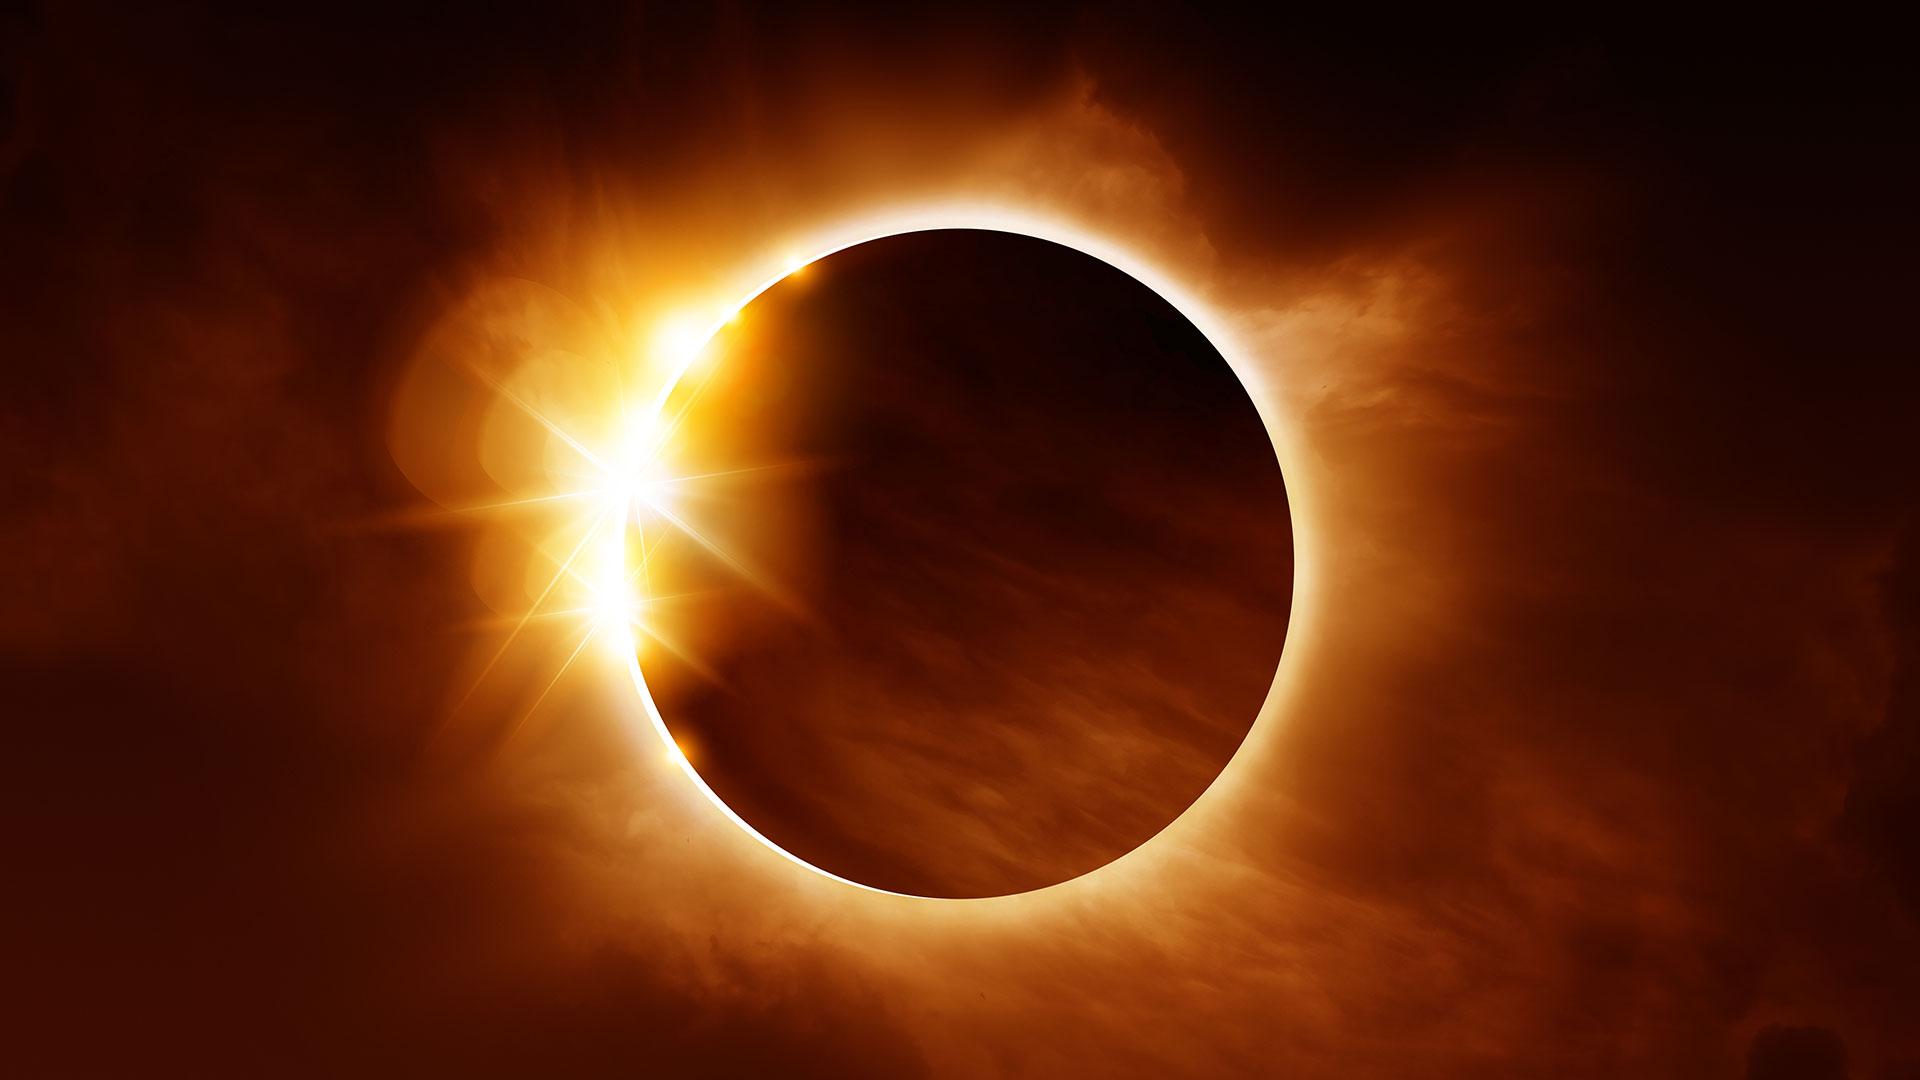 معهد الفلك يبدأ رصد كسوف الشمس الجزئي لمدة ساعتين - بوابة الأهرام